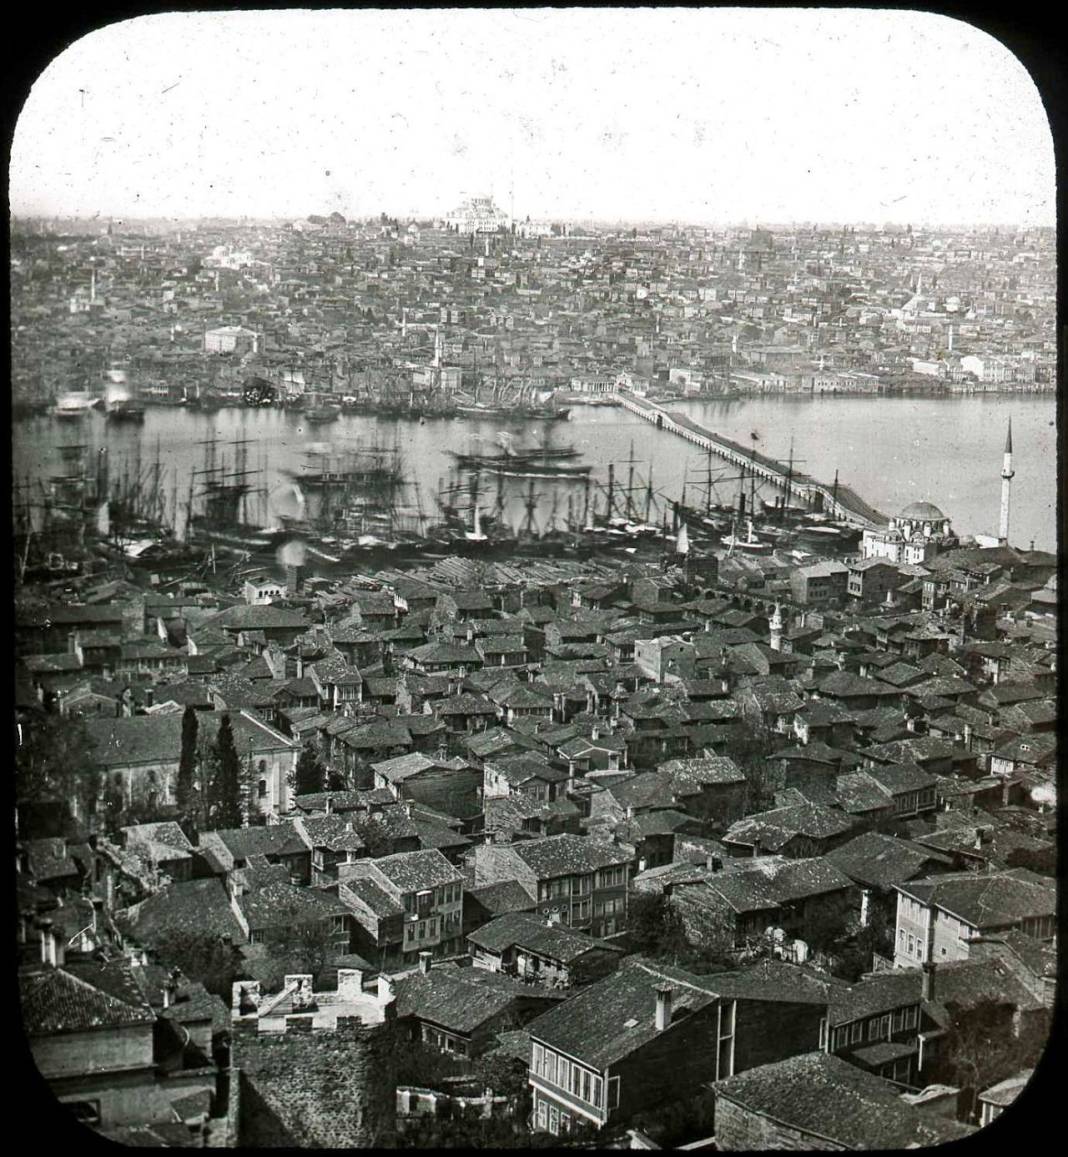 Tamamen tahtadan yapılan İstanbul’daki köprünün hikayesini biliyor musunuz? 8